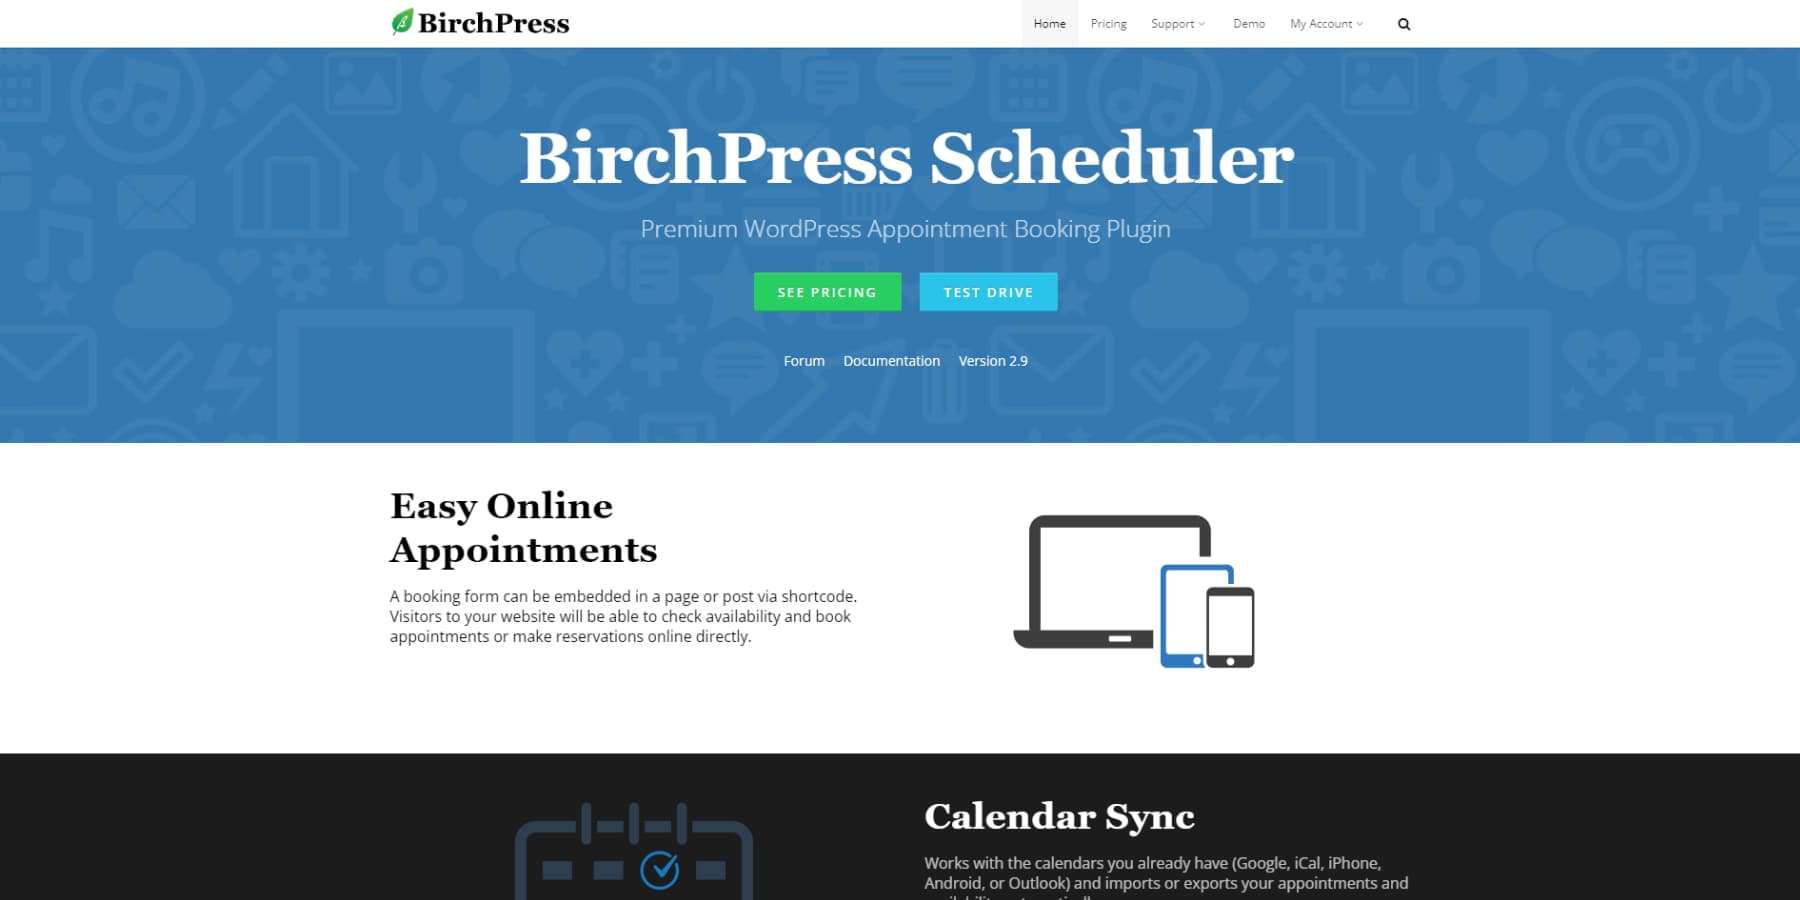 A screenshot of BirchPress's home